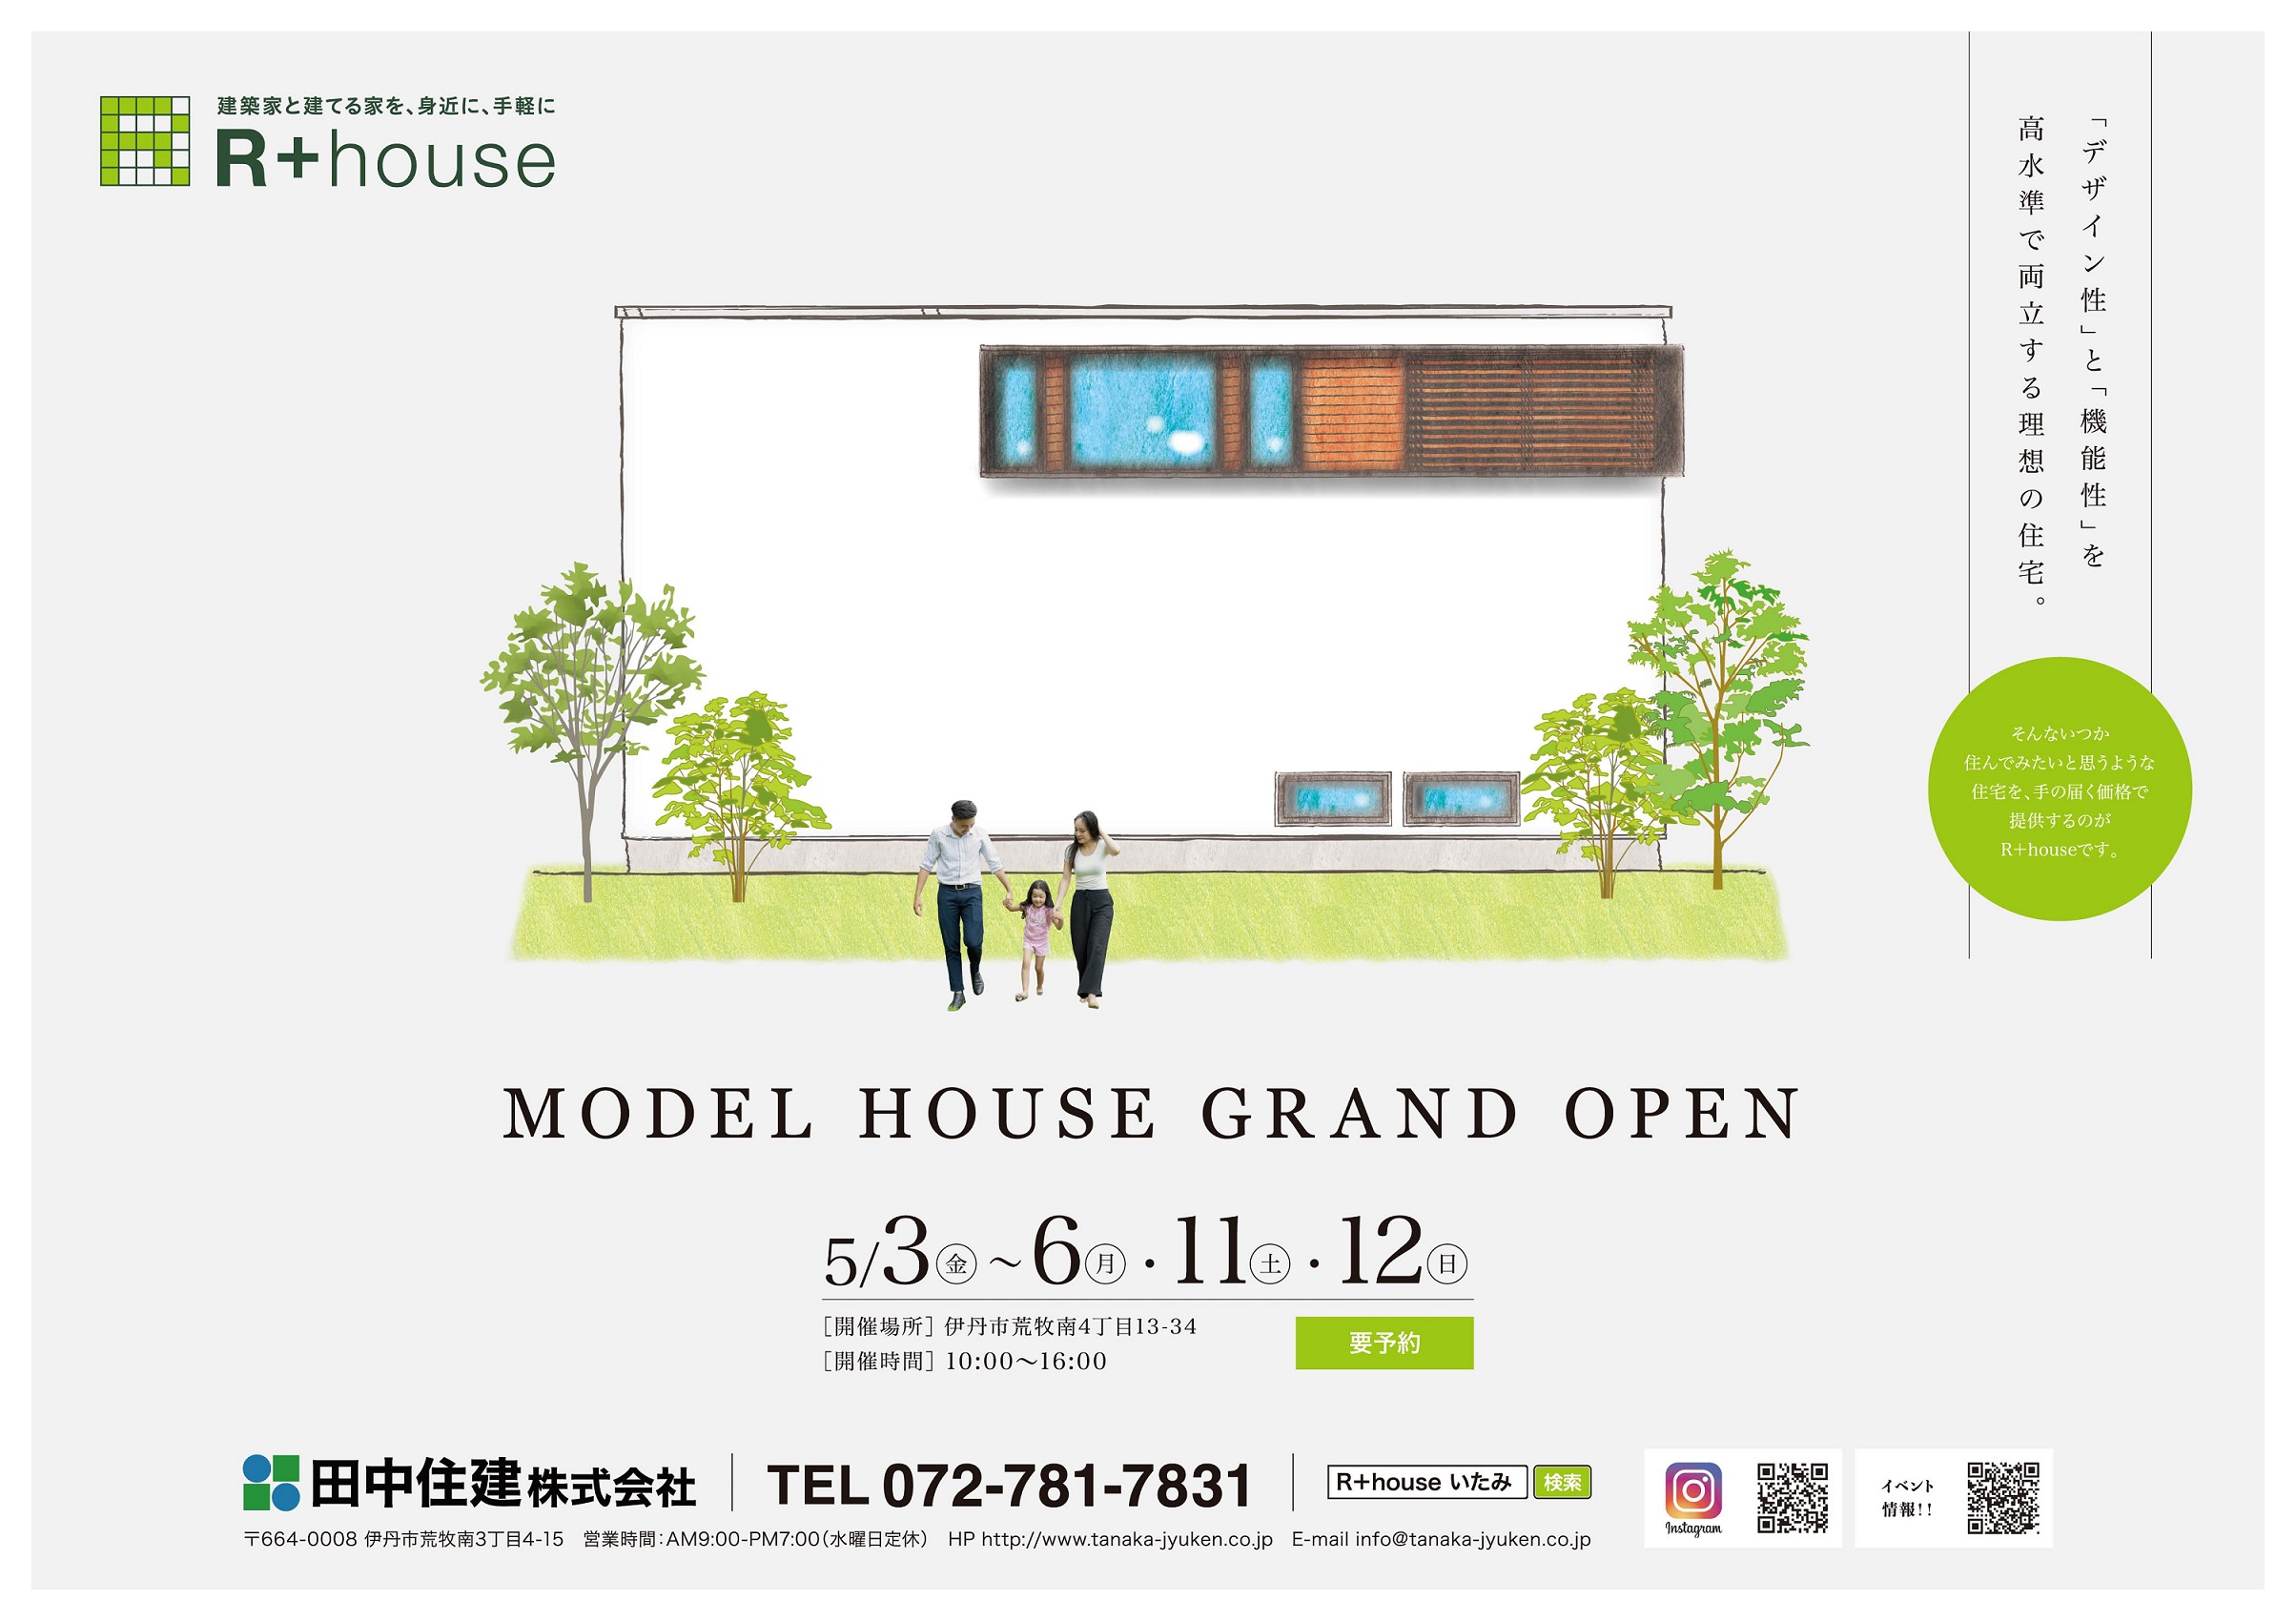 ★Model House Grand Open★